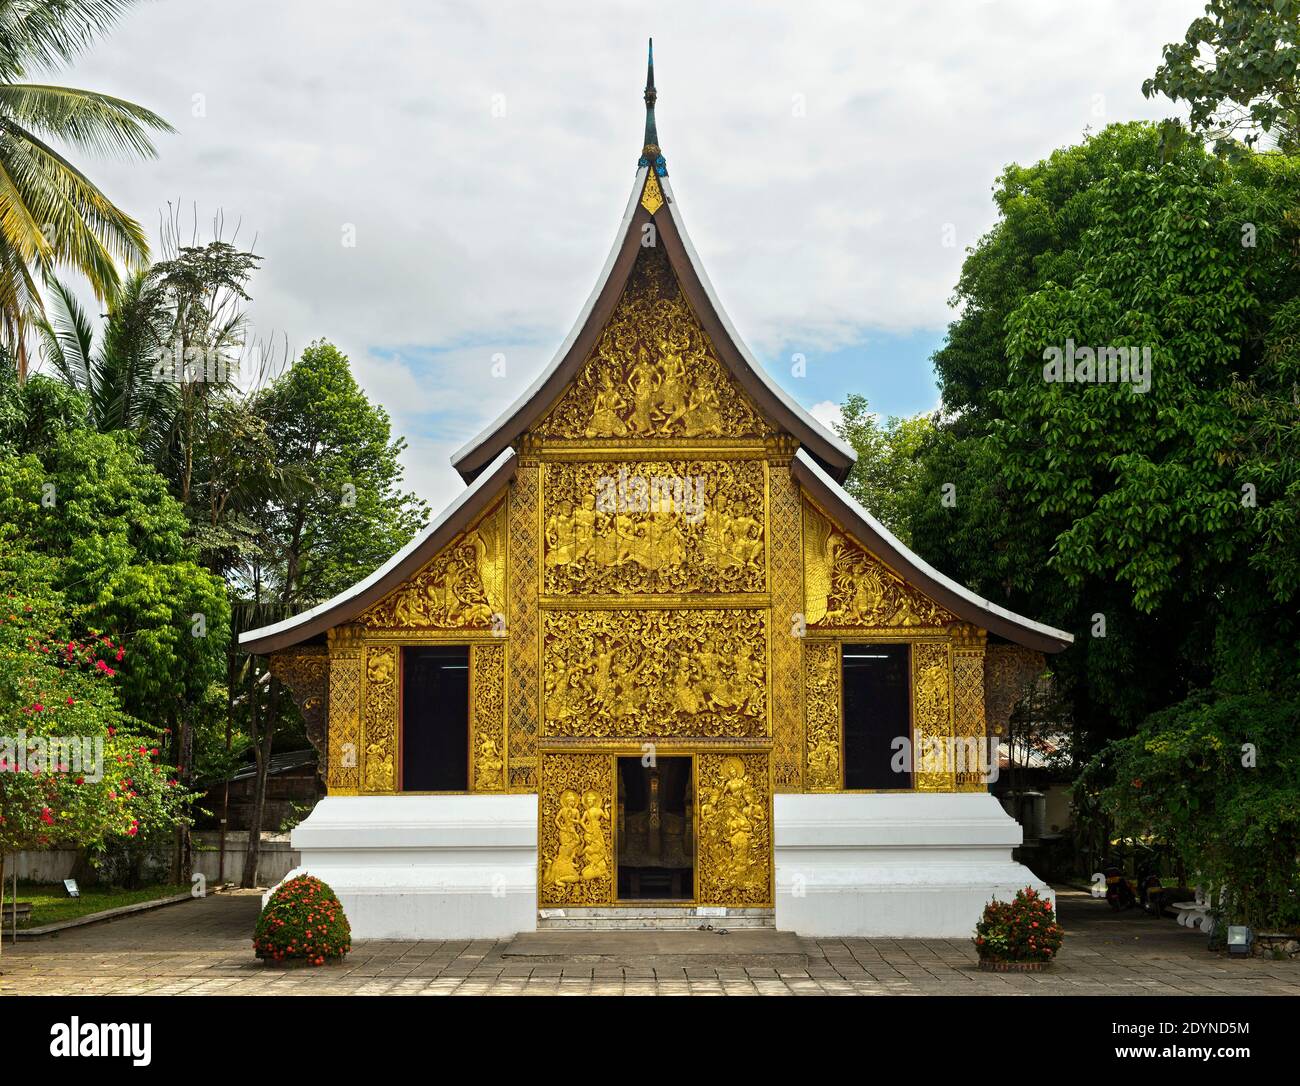 Maison du Chariot funéraire royal, Temple Wat Xieng Thong, Luang Prabang, Laos Banque D'Images